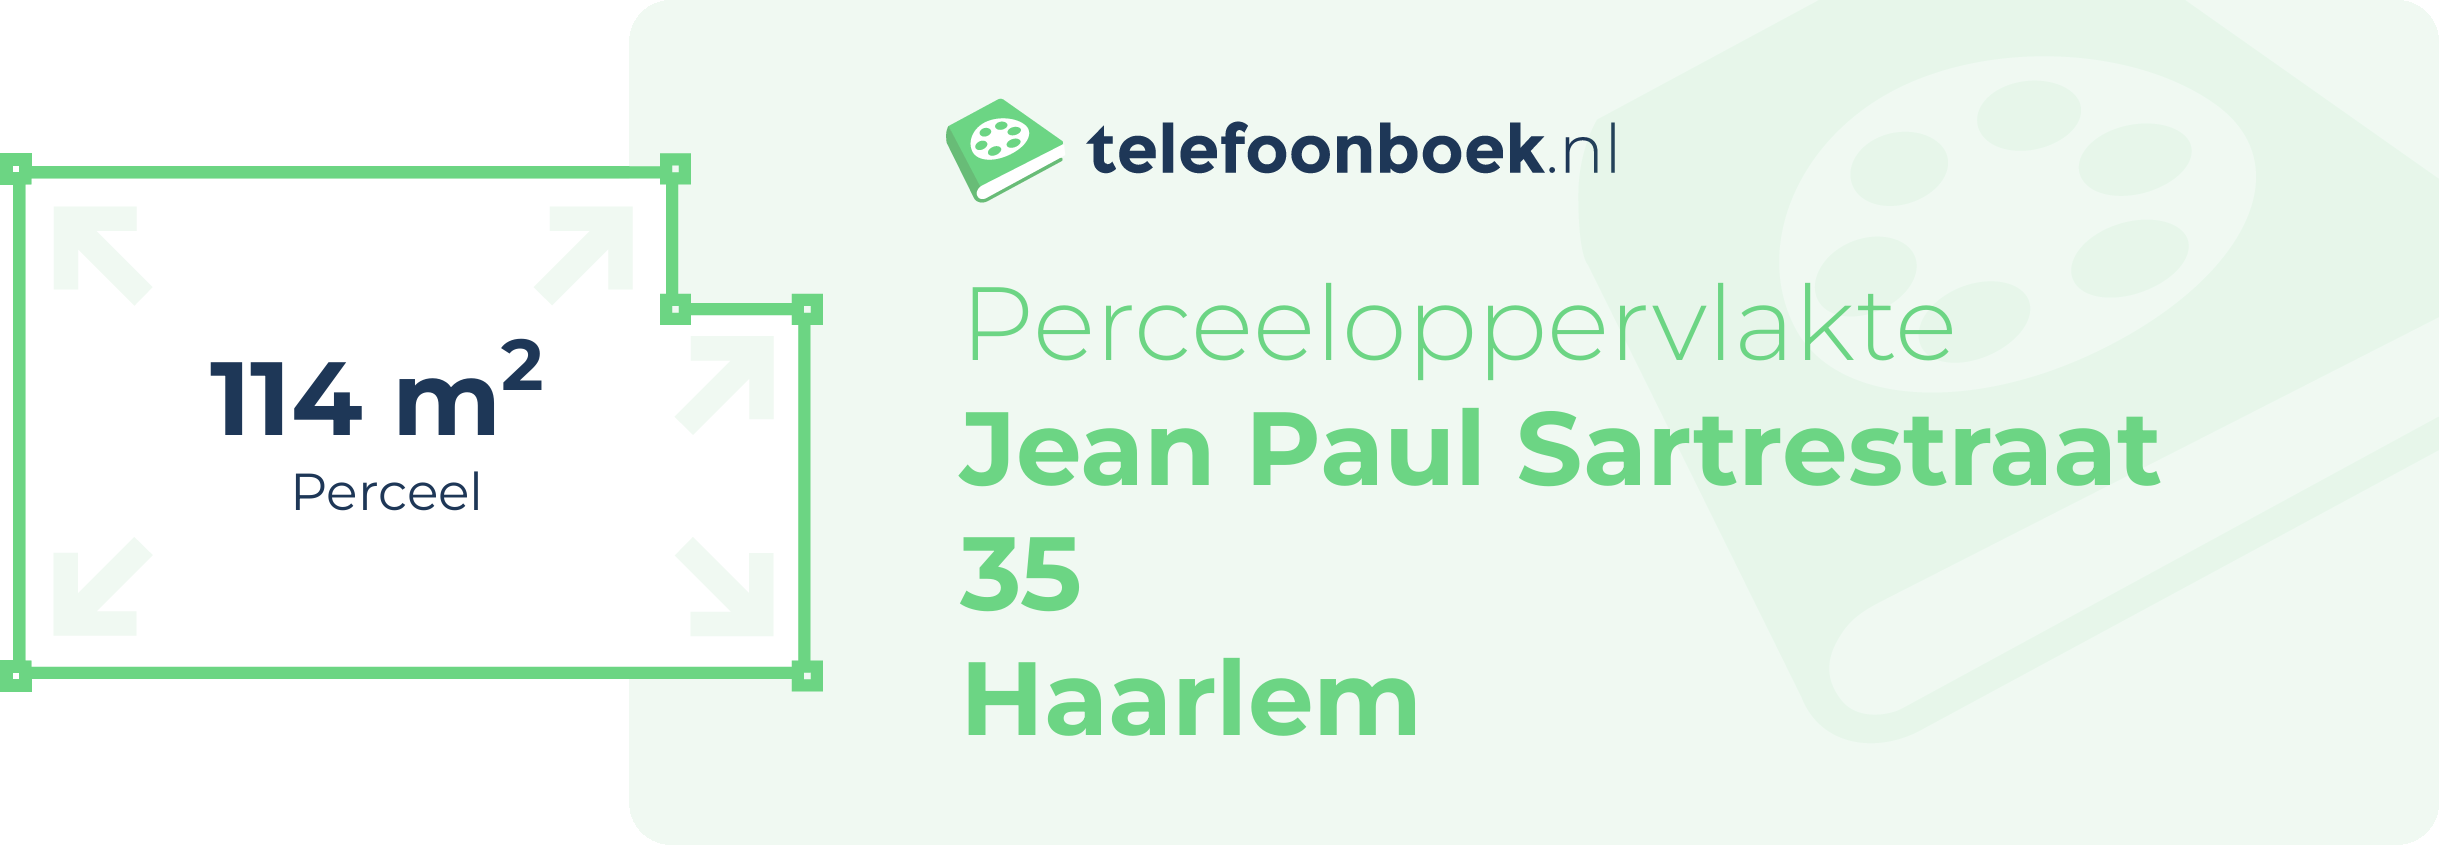 Perceeloppervlakte Jean Paul Sartrestraat 35 Haarlem